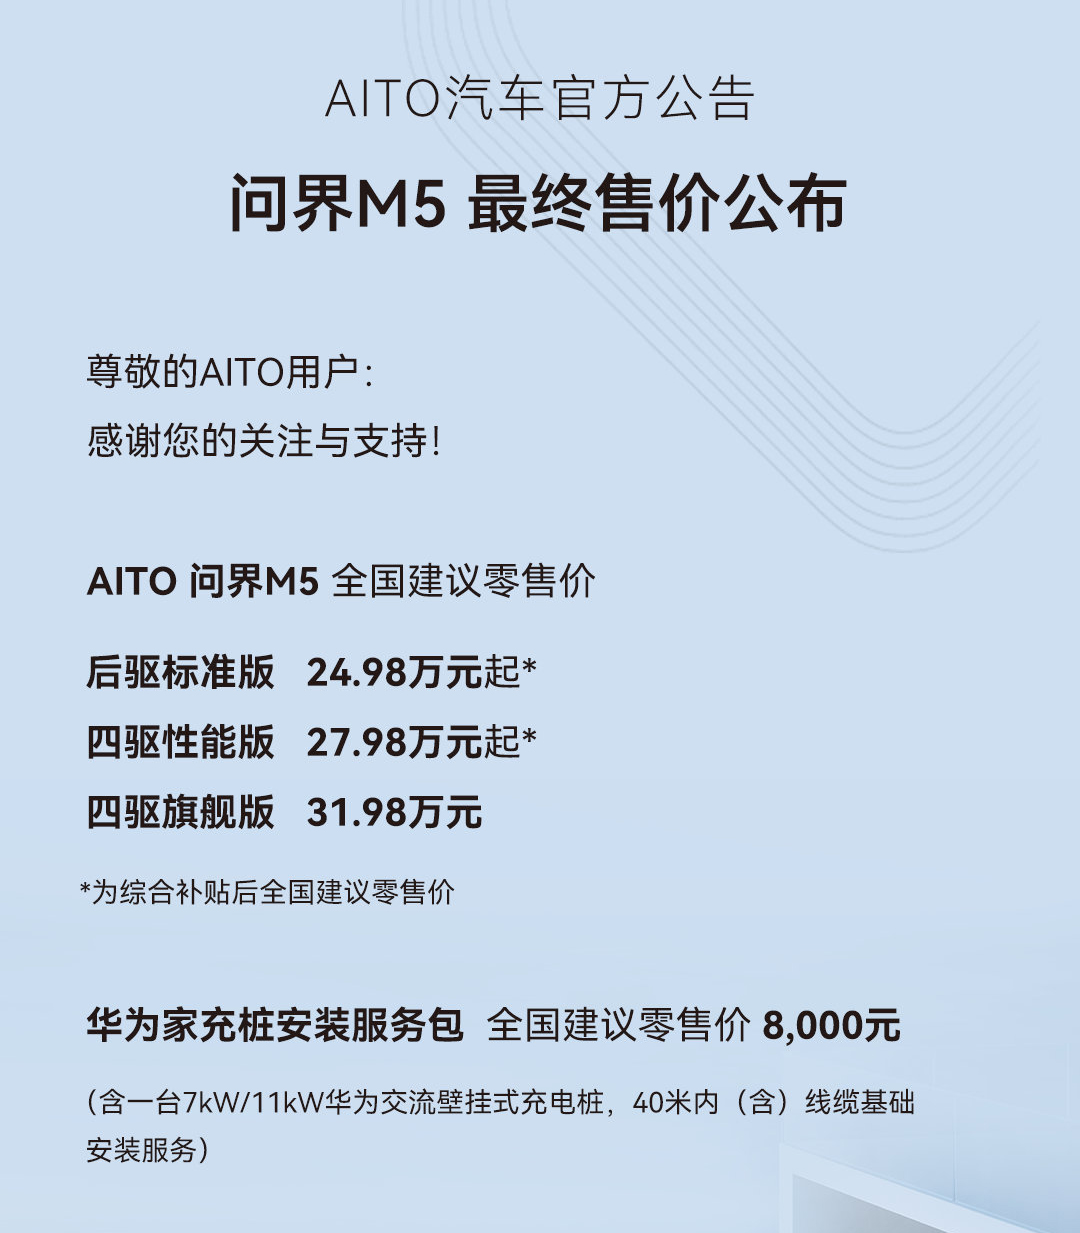 24.98-31.98万元 AITO问界M5公布最终售价